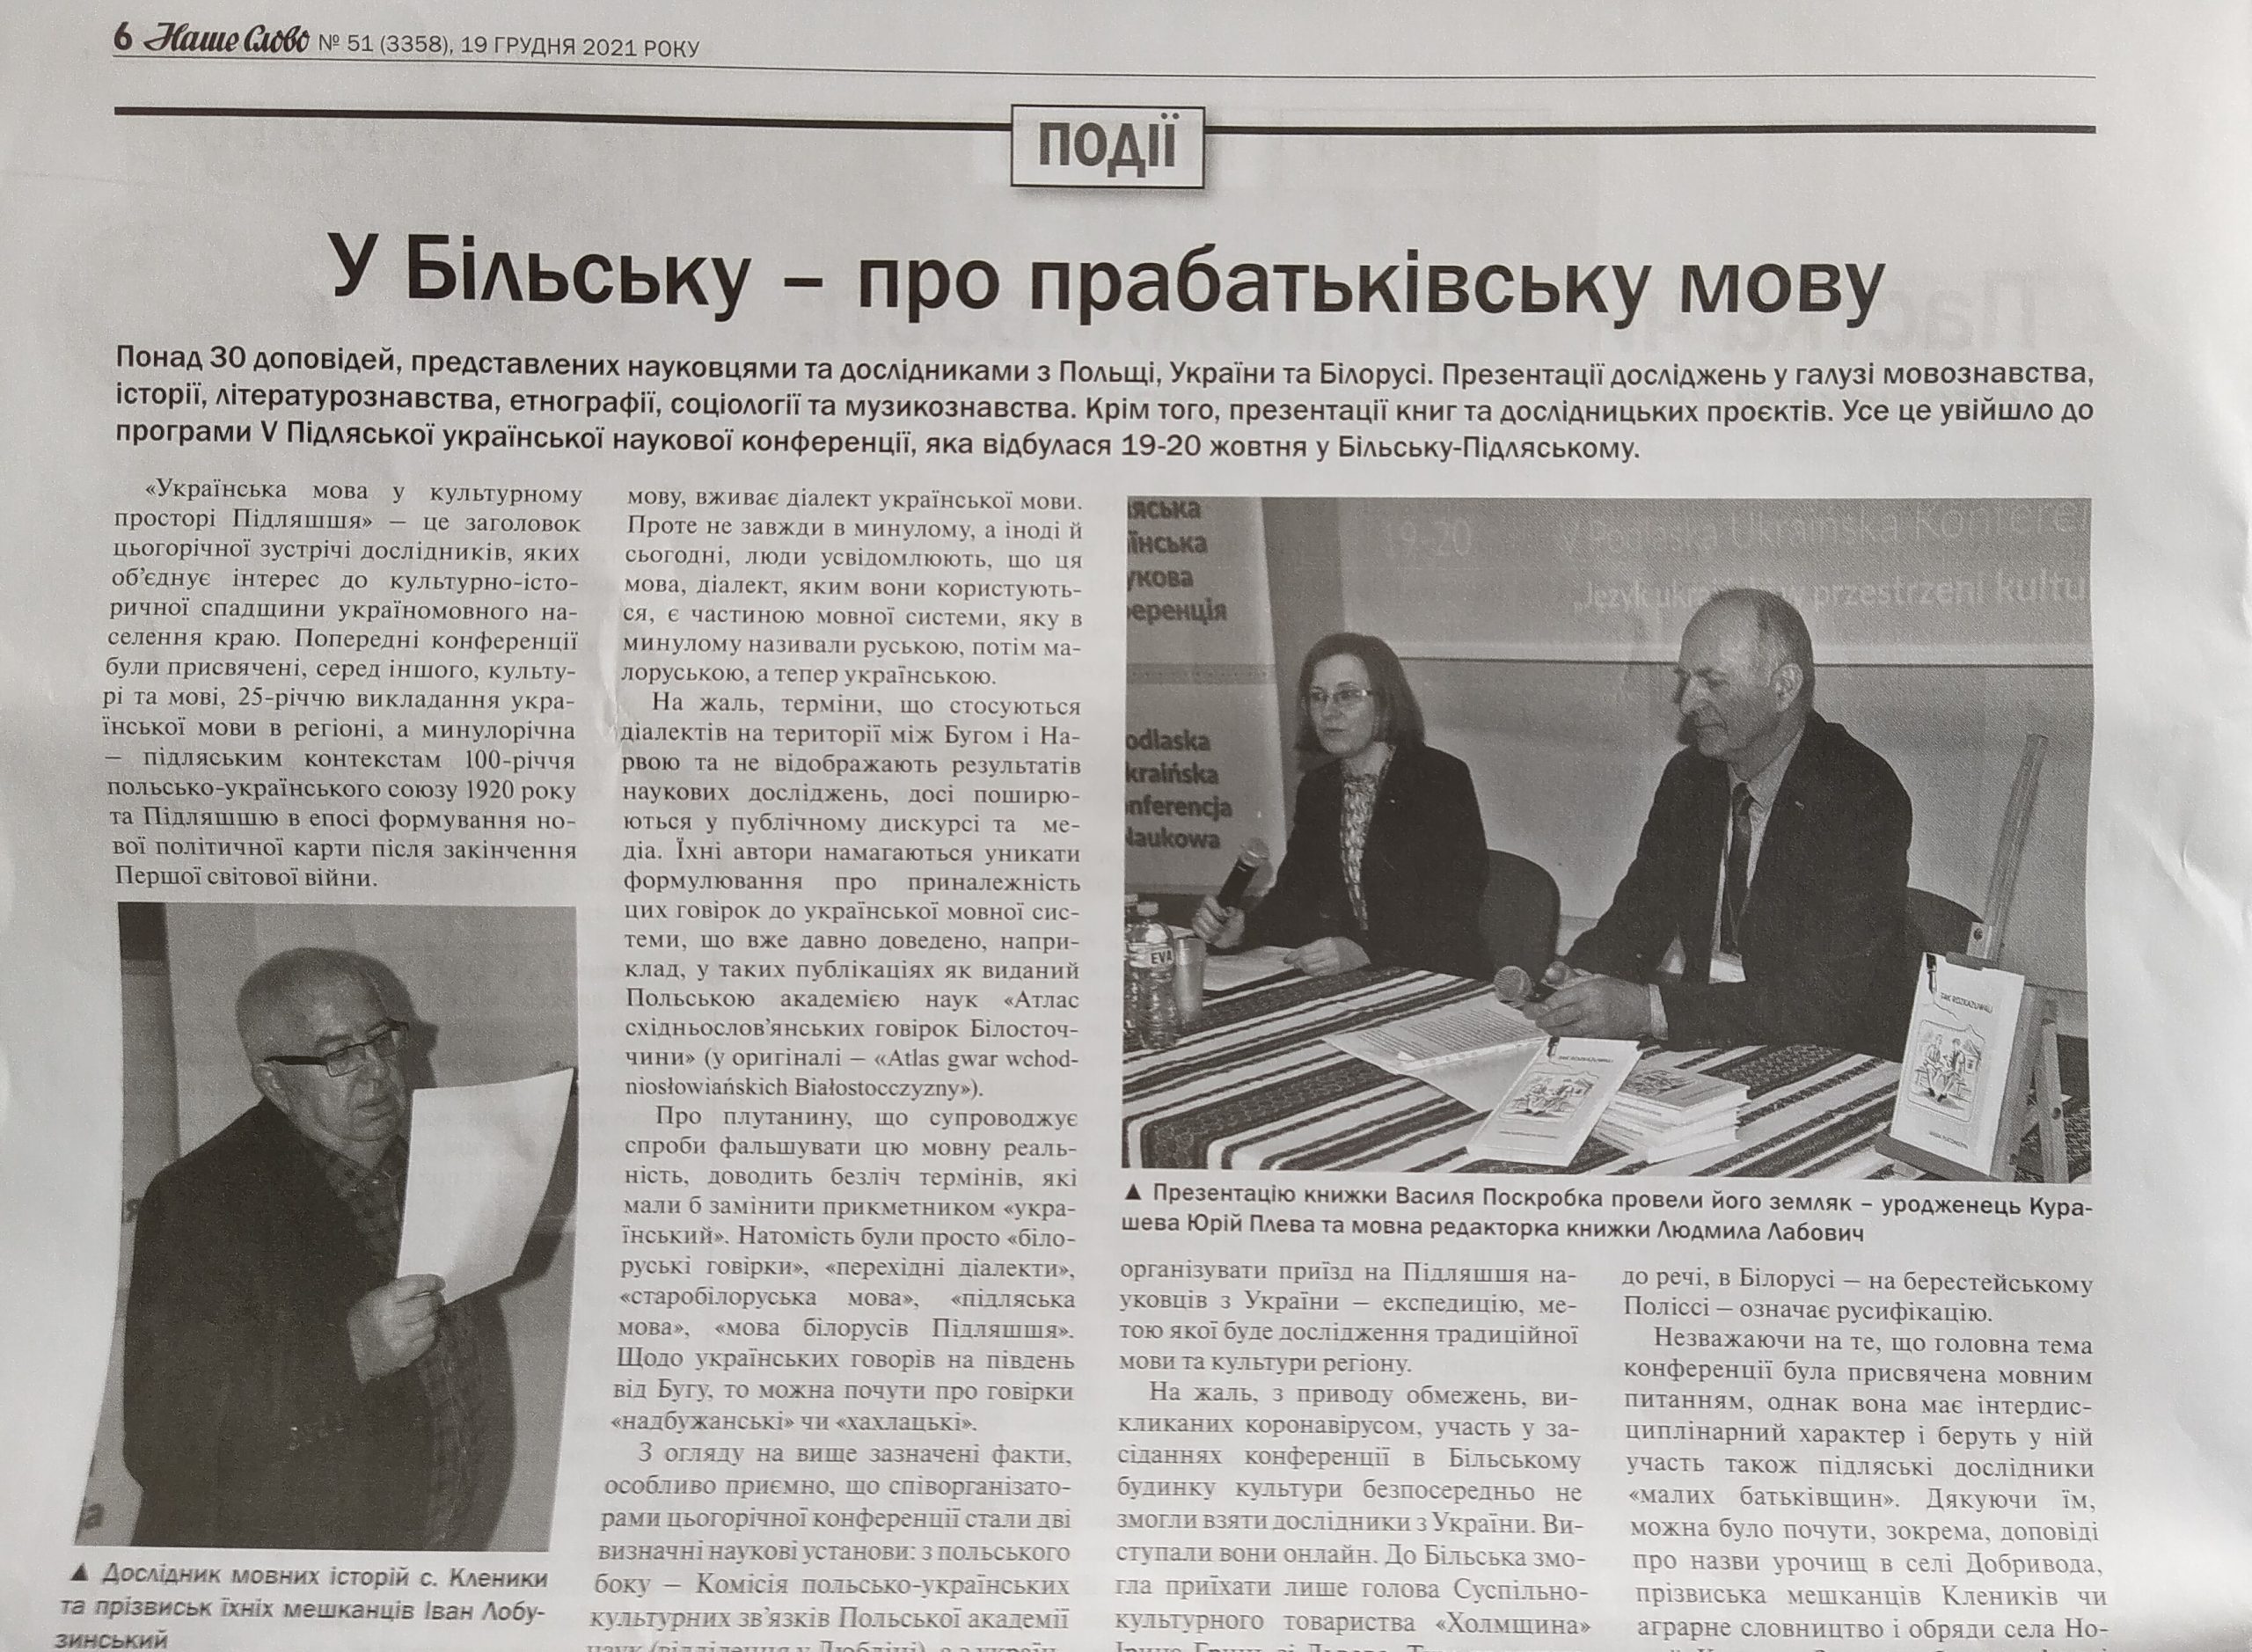 O Podlaskiej Ukraińskiej Konferencji Naukowej w „Naszym Słowie”